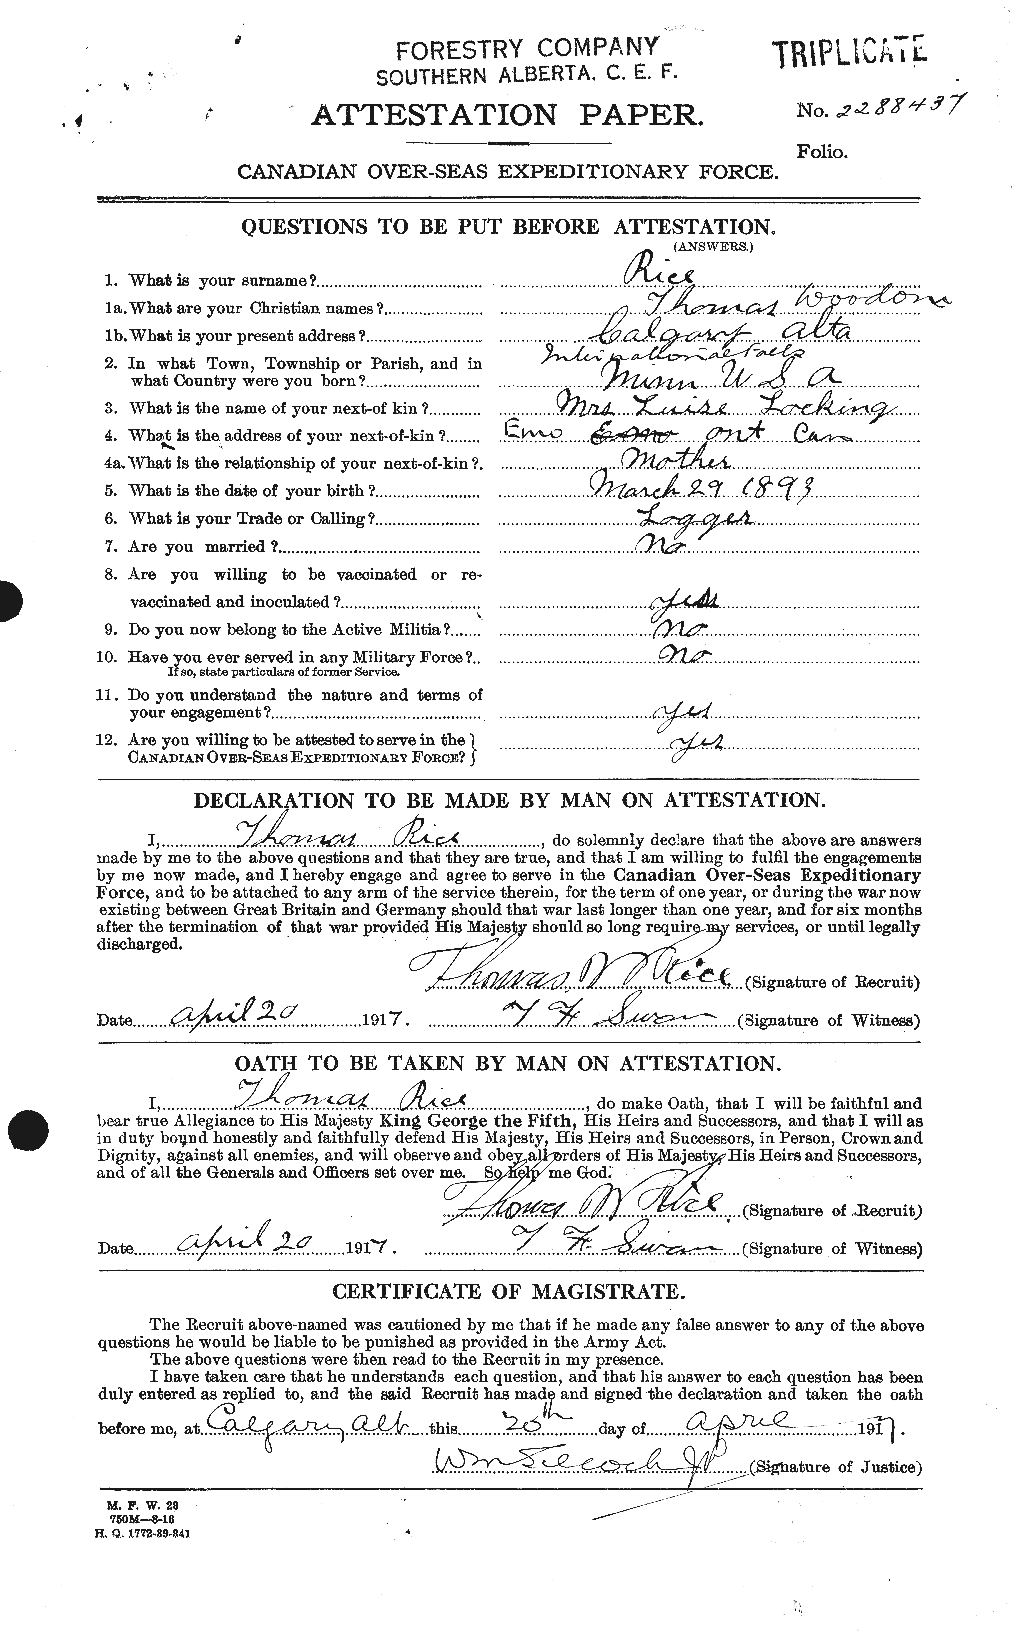 Dossiers du Personnel de la Première Guerre mondiale - CEC 600456a